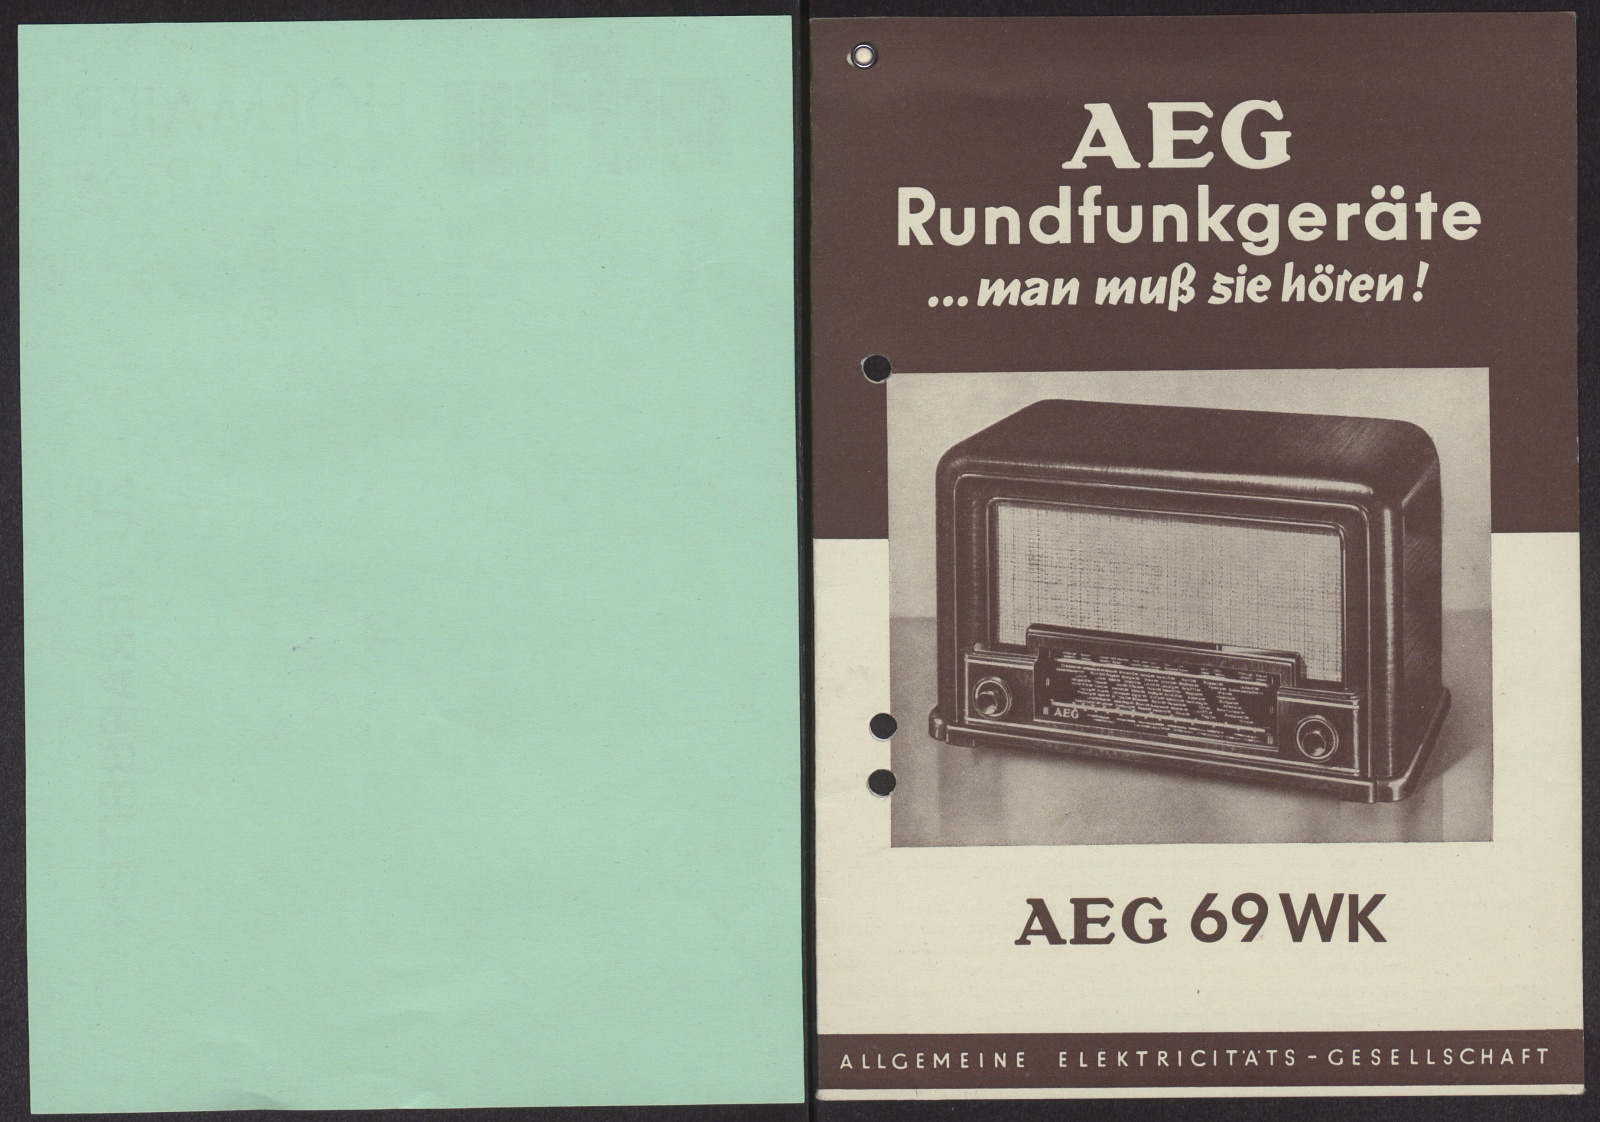 Bedienungsanleitung: AEG Rundfunkgeräte ... man muß sie hören! AEG 69 WK (Stiftung Deutsches Technikmuseum Berlin CC0)